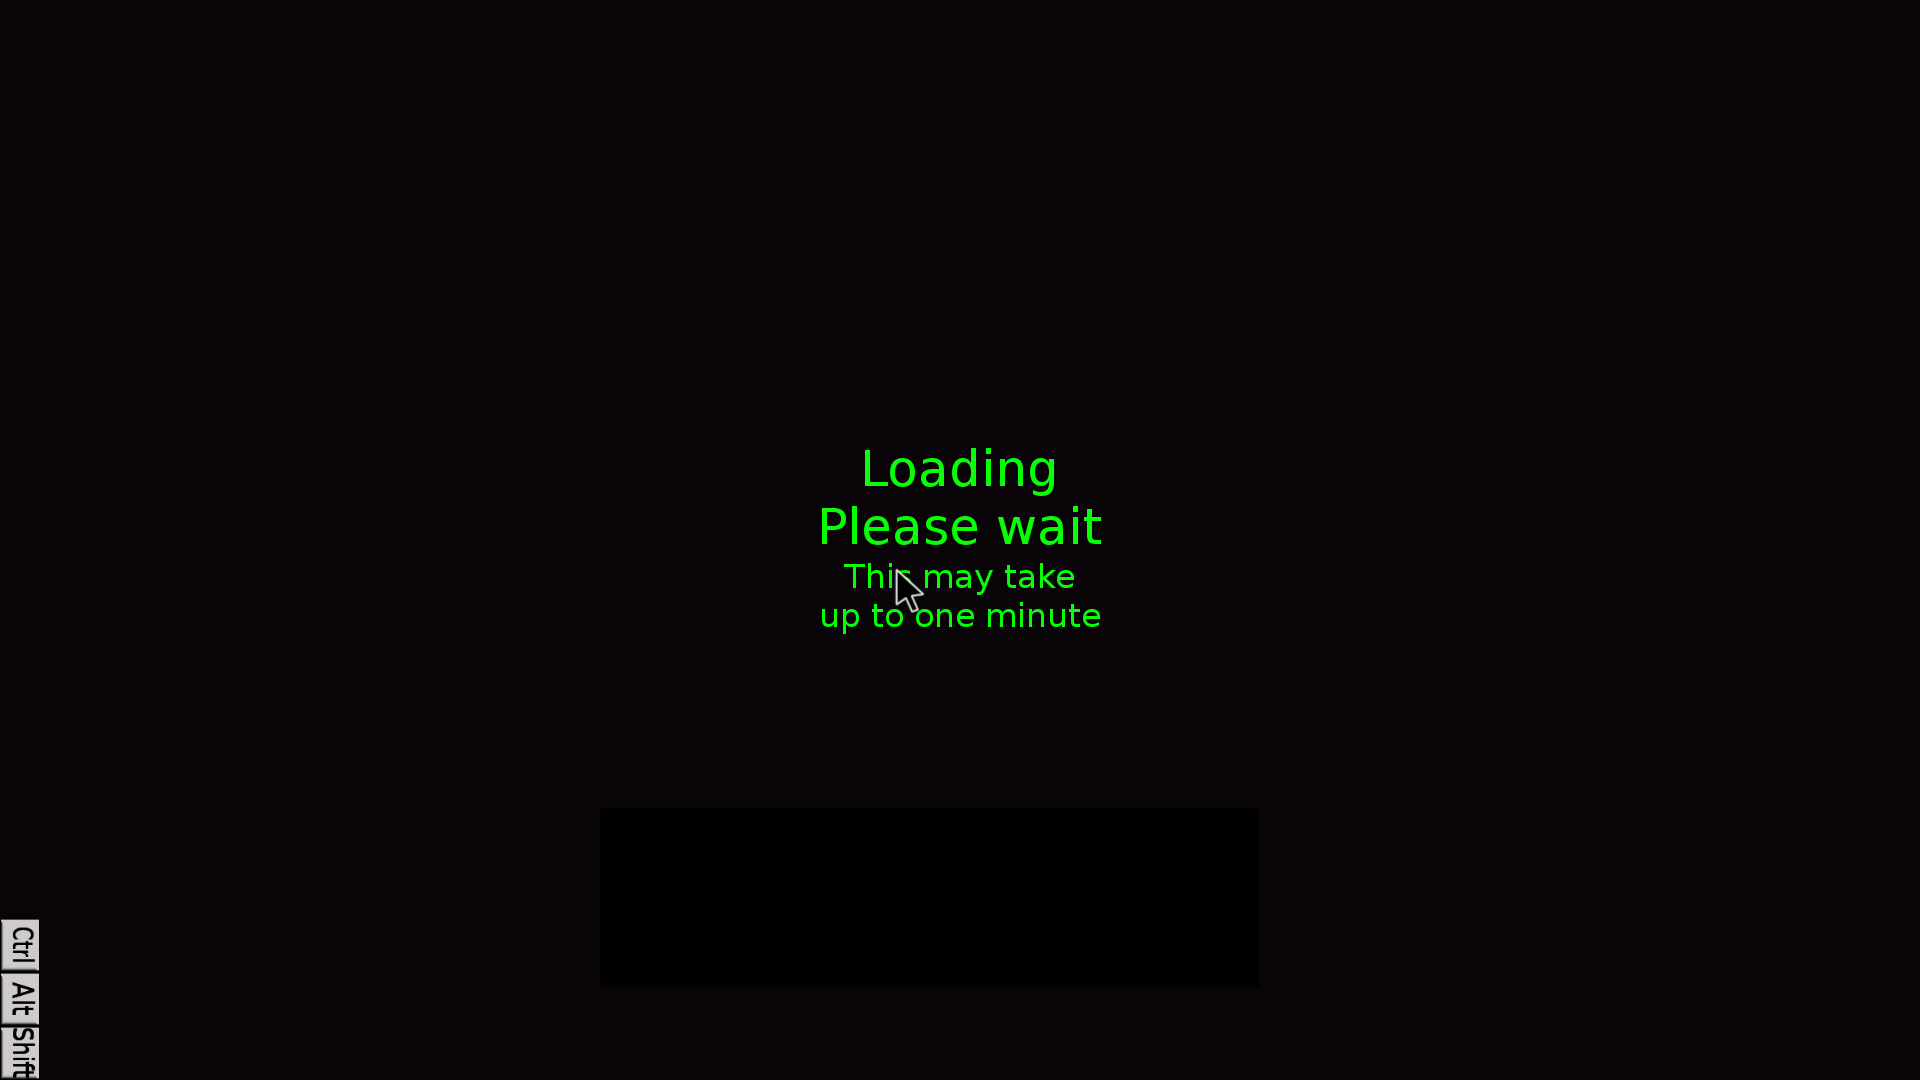 ("Loading Please wait...")